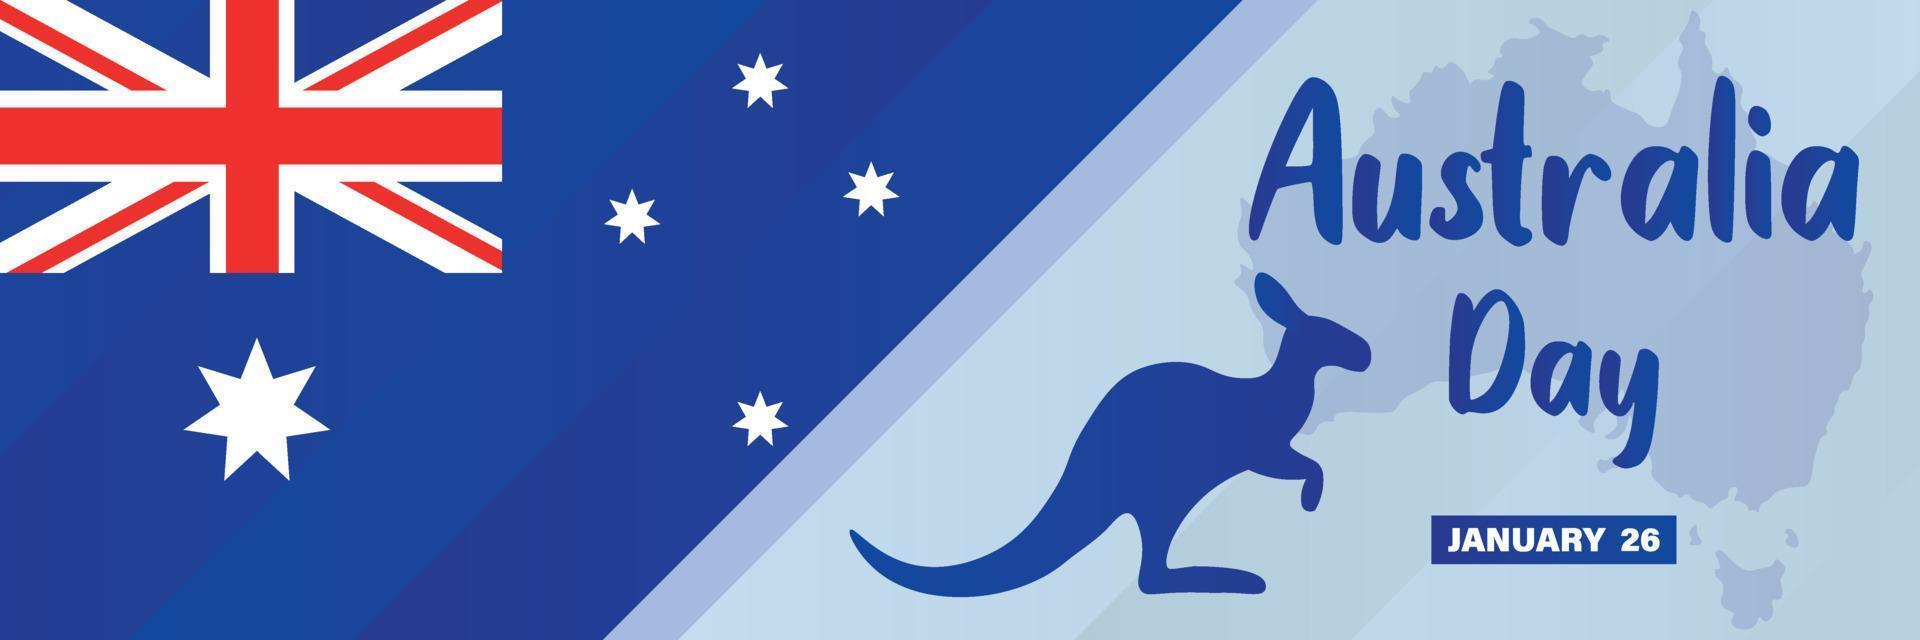 26 de enero, feliz día de australia. bandera nacional australiana, mapa y canguro. fondo, póster, tarjeta, banner ilustración vectorial vector